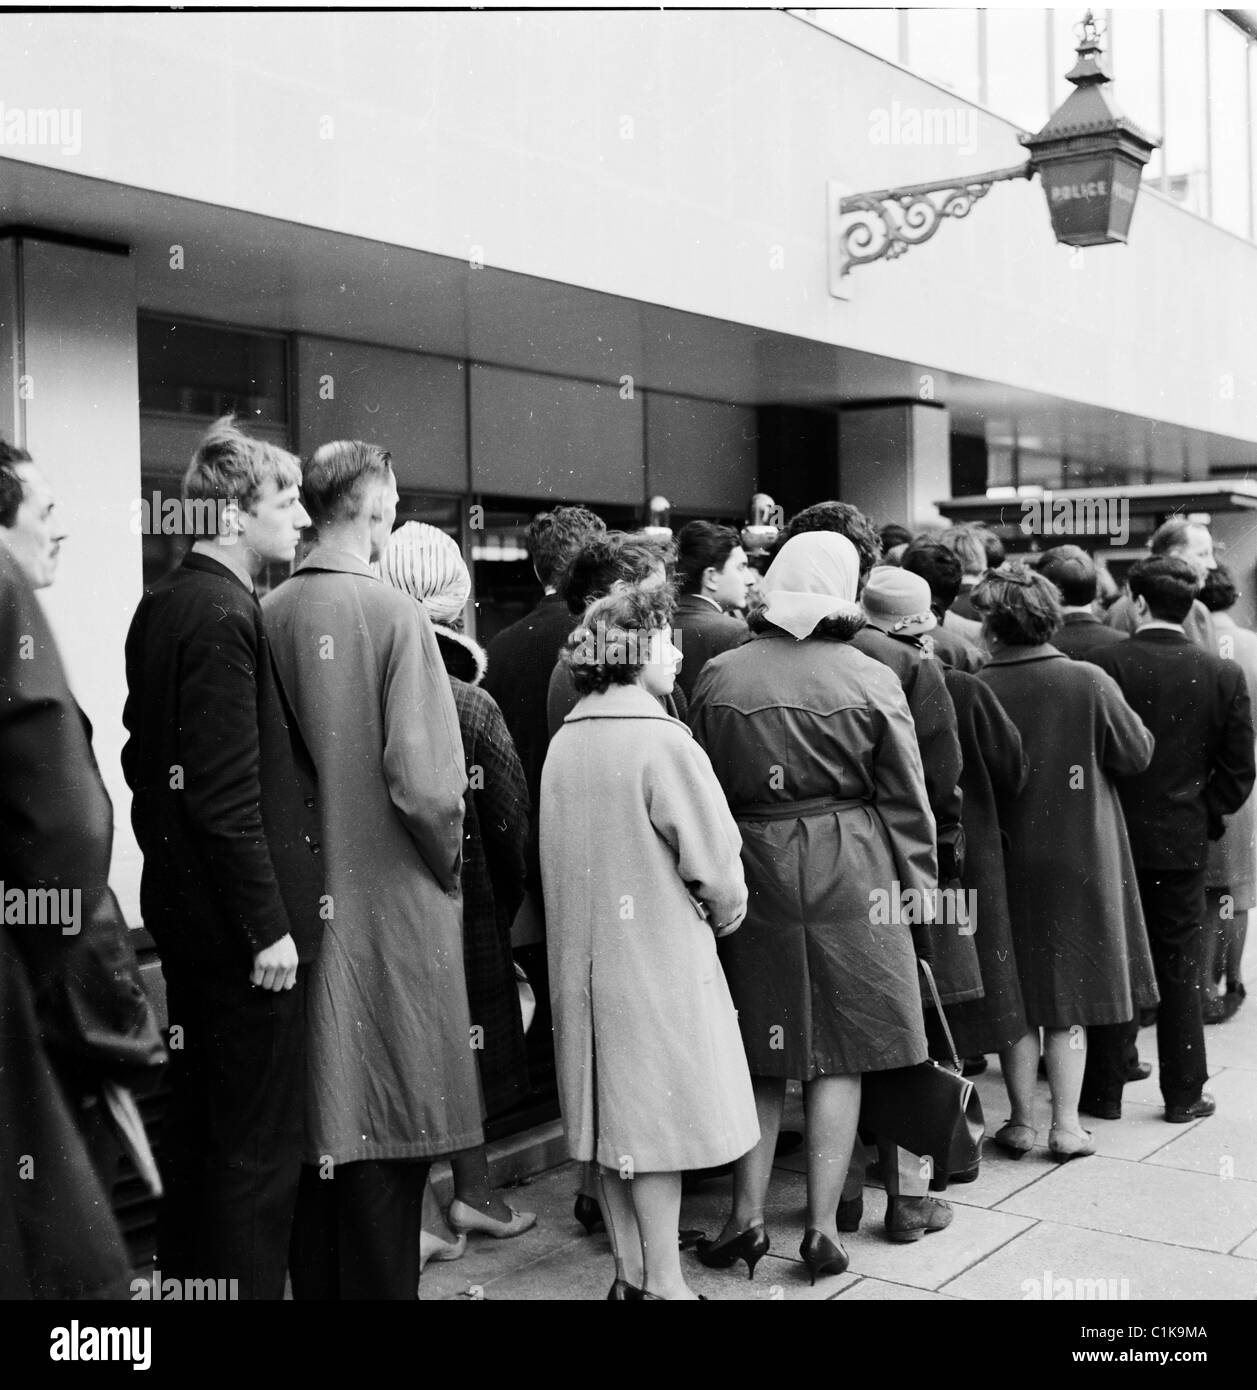 1950er Jahre historische Bild von j Allan Cash von Menschen stehen in einer Warteschlange auf eine Polizeiwache in London für einen Tag der offenen Tür eingeben. Stockfoto